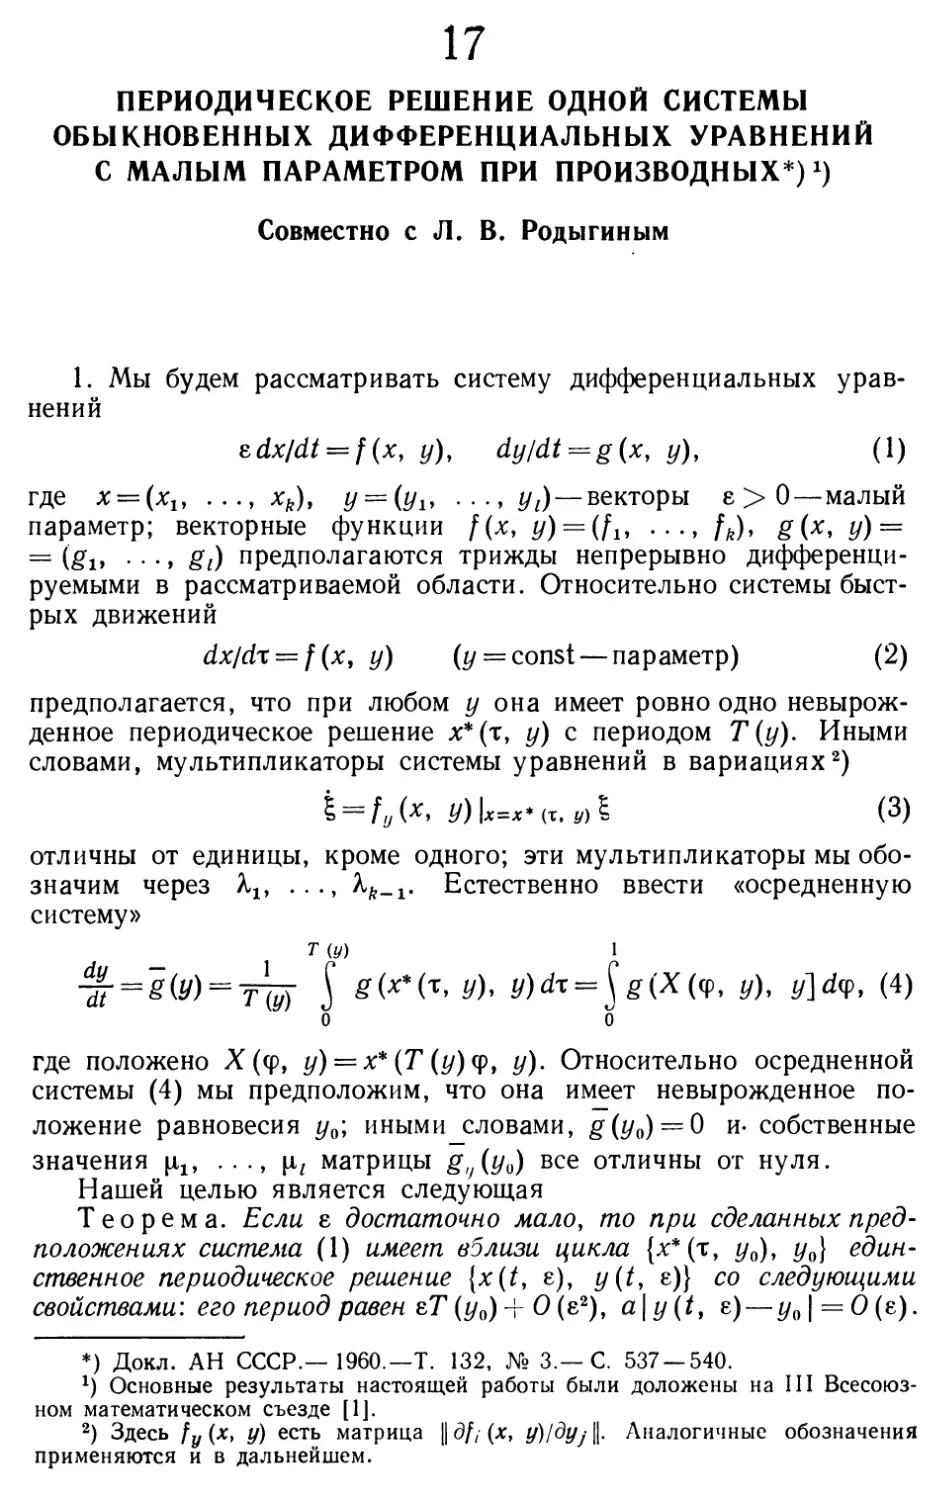 17. Периодическое решение одной системы обыкновенных дифференциальных уравнений с малым параметром при производных